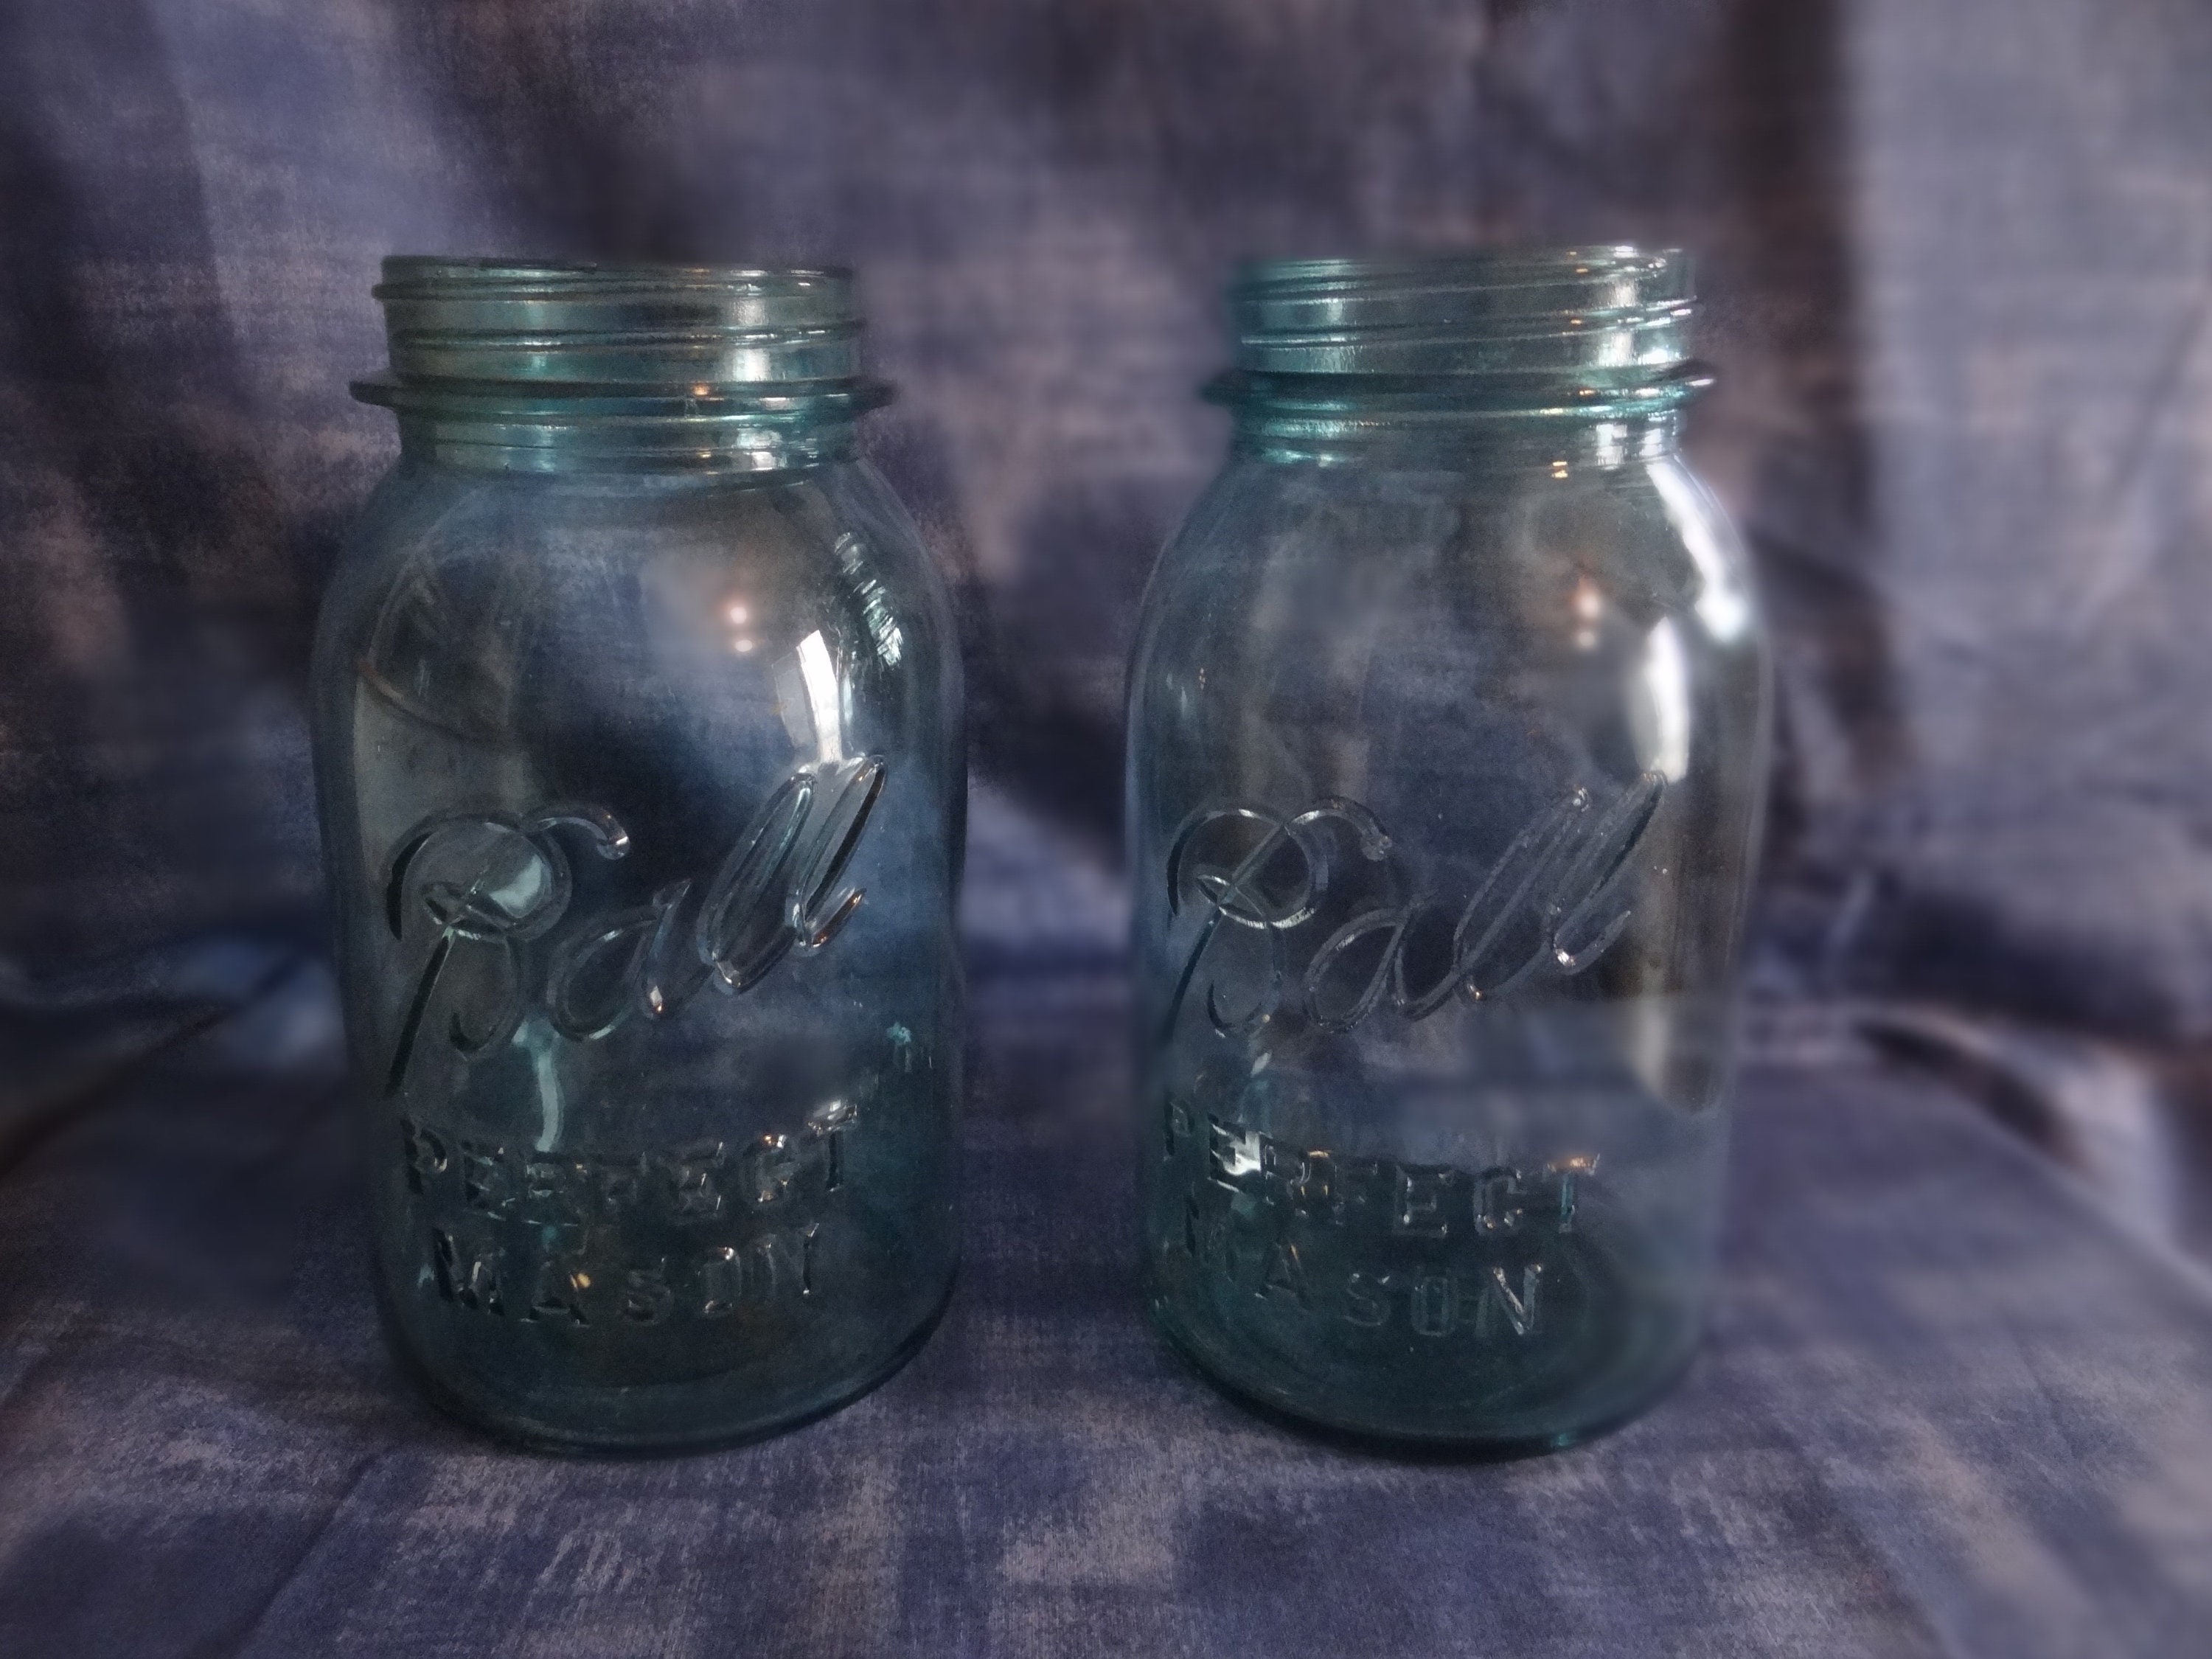 ORIGINAL TRY OUT PACK JARS – Pearl Jars